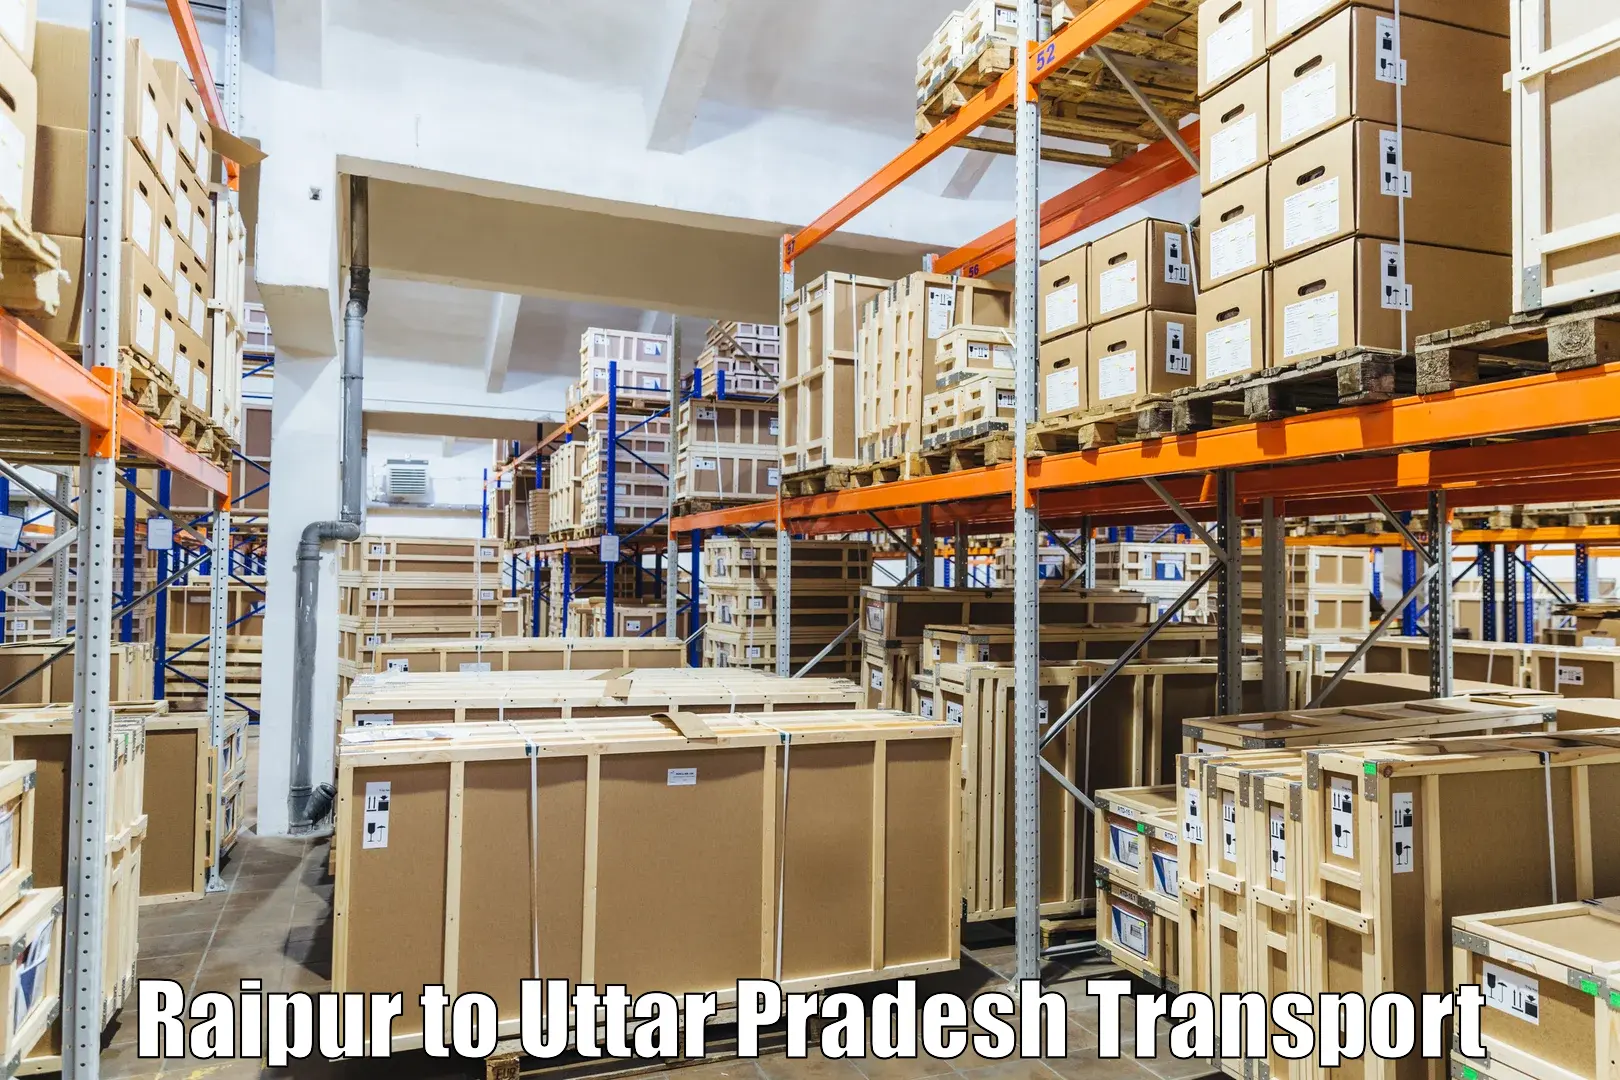 Daily parcel service transport Raipur to Auraiya